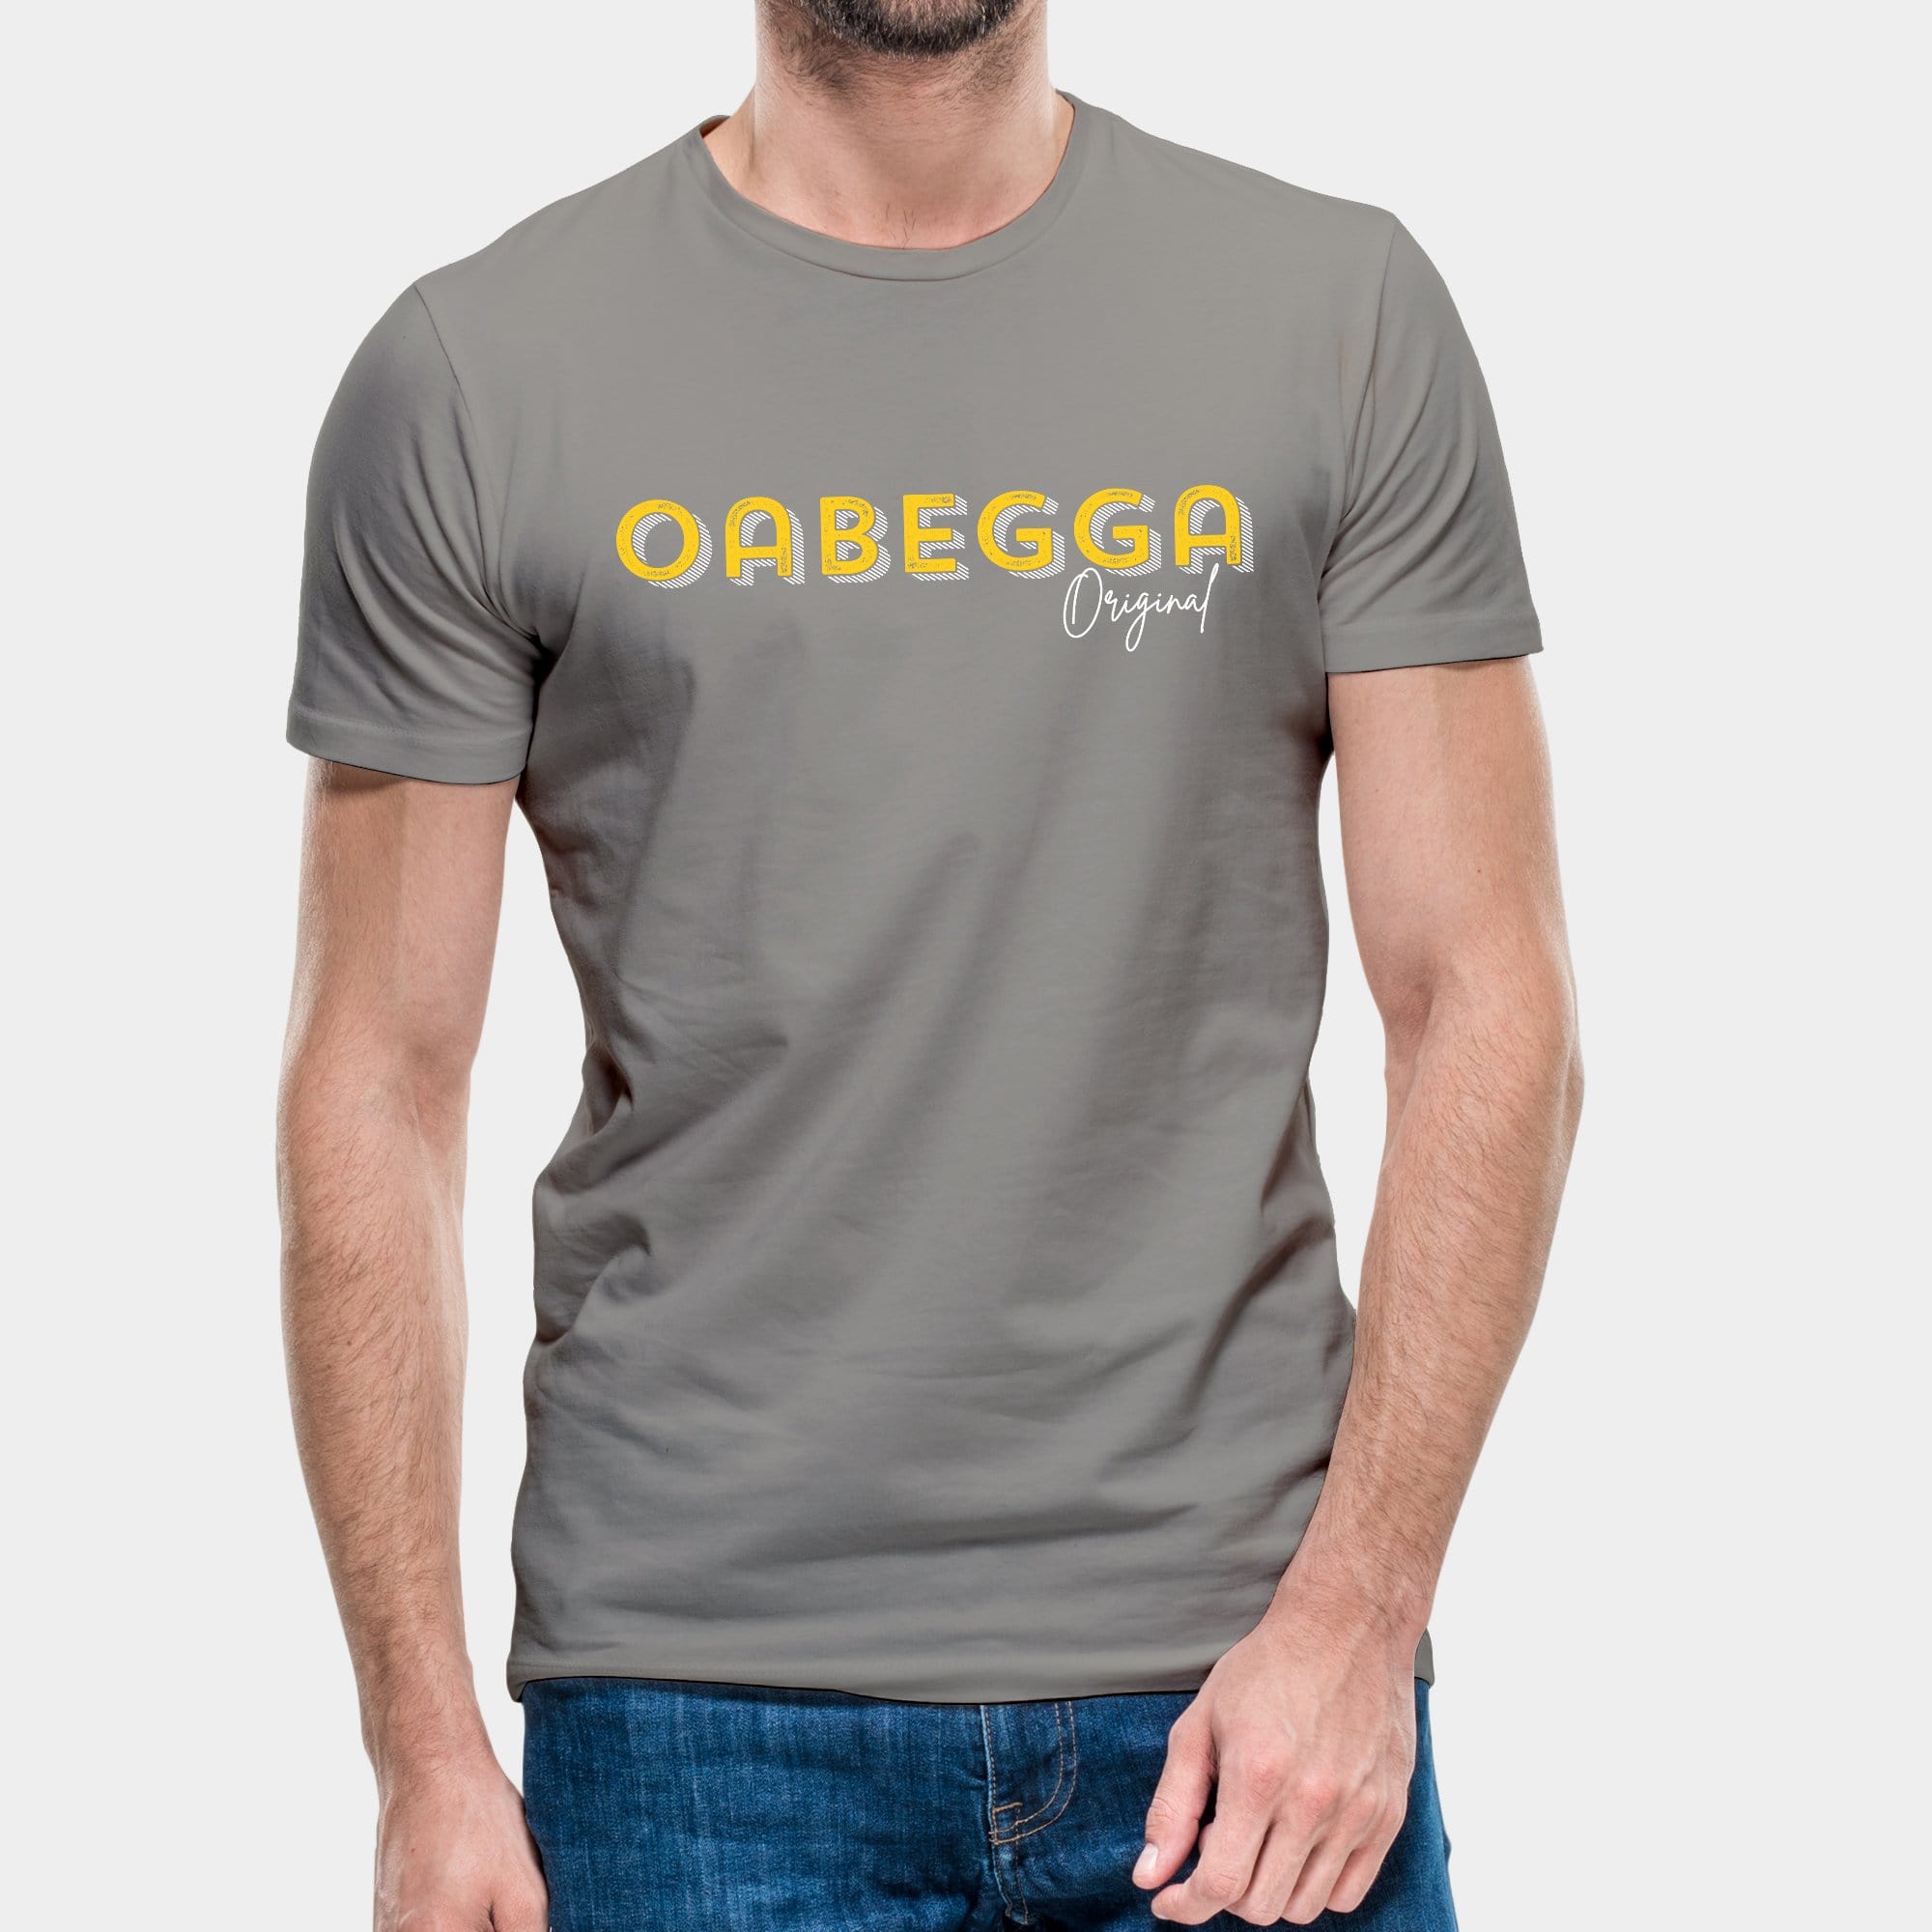 Herren-T-Shirt "Oabegga Original"